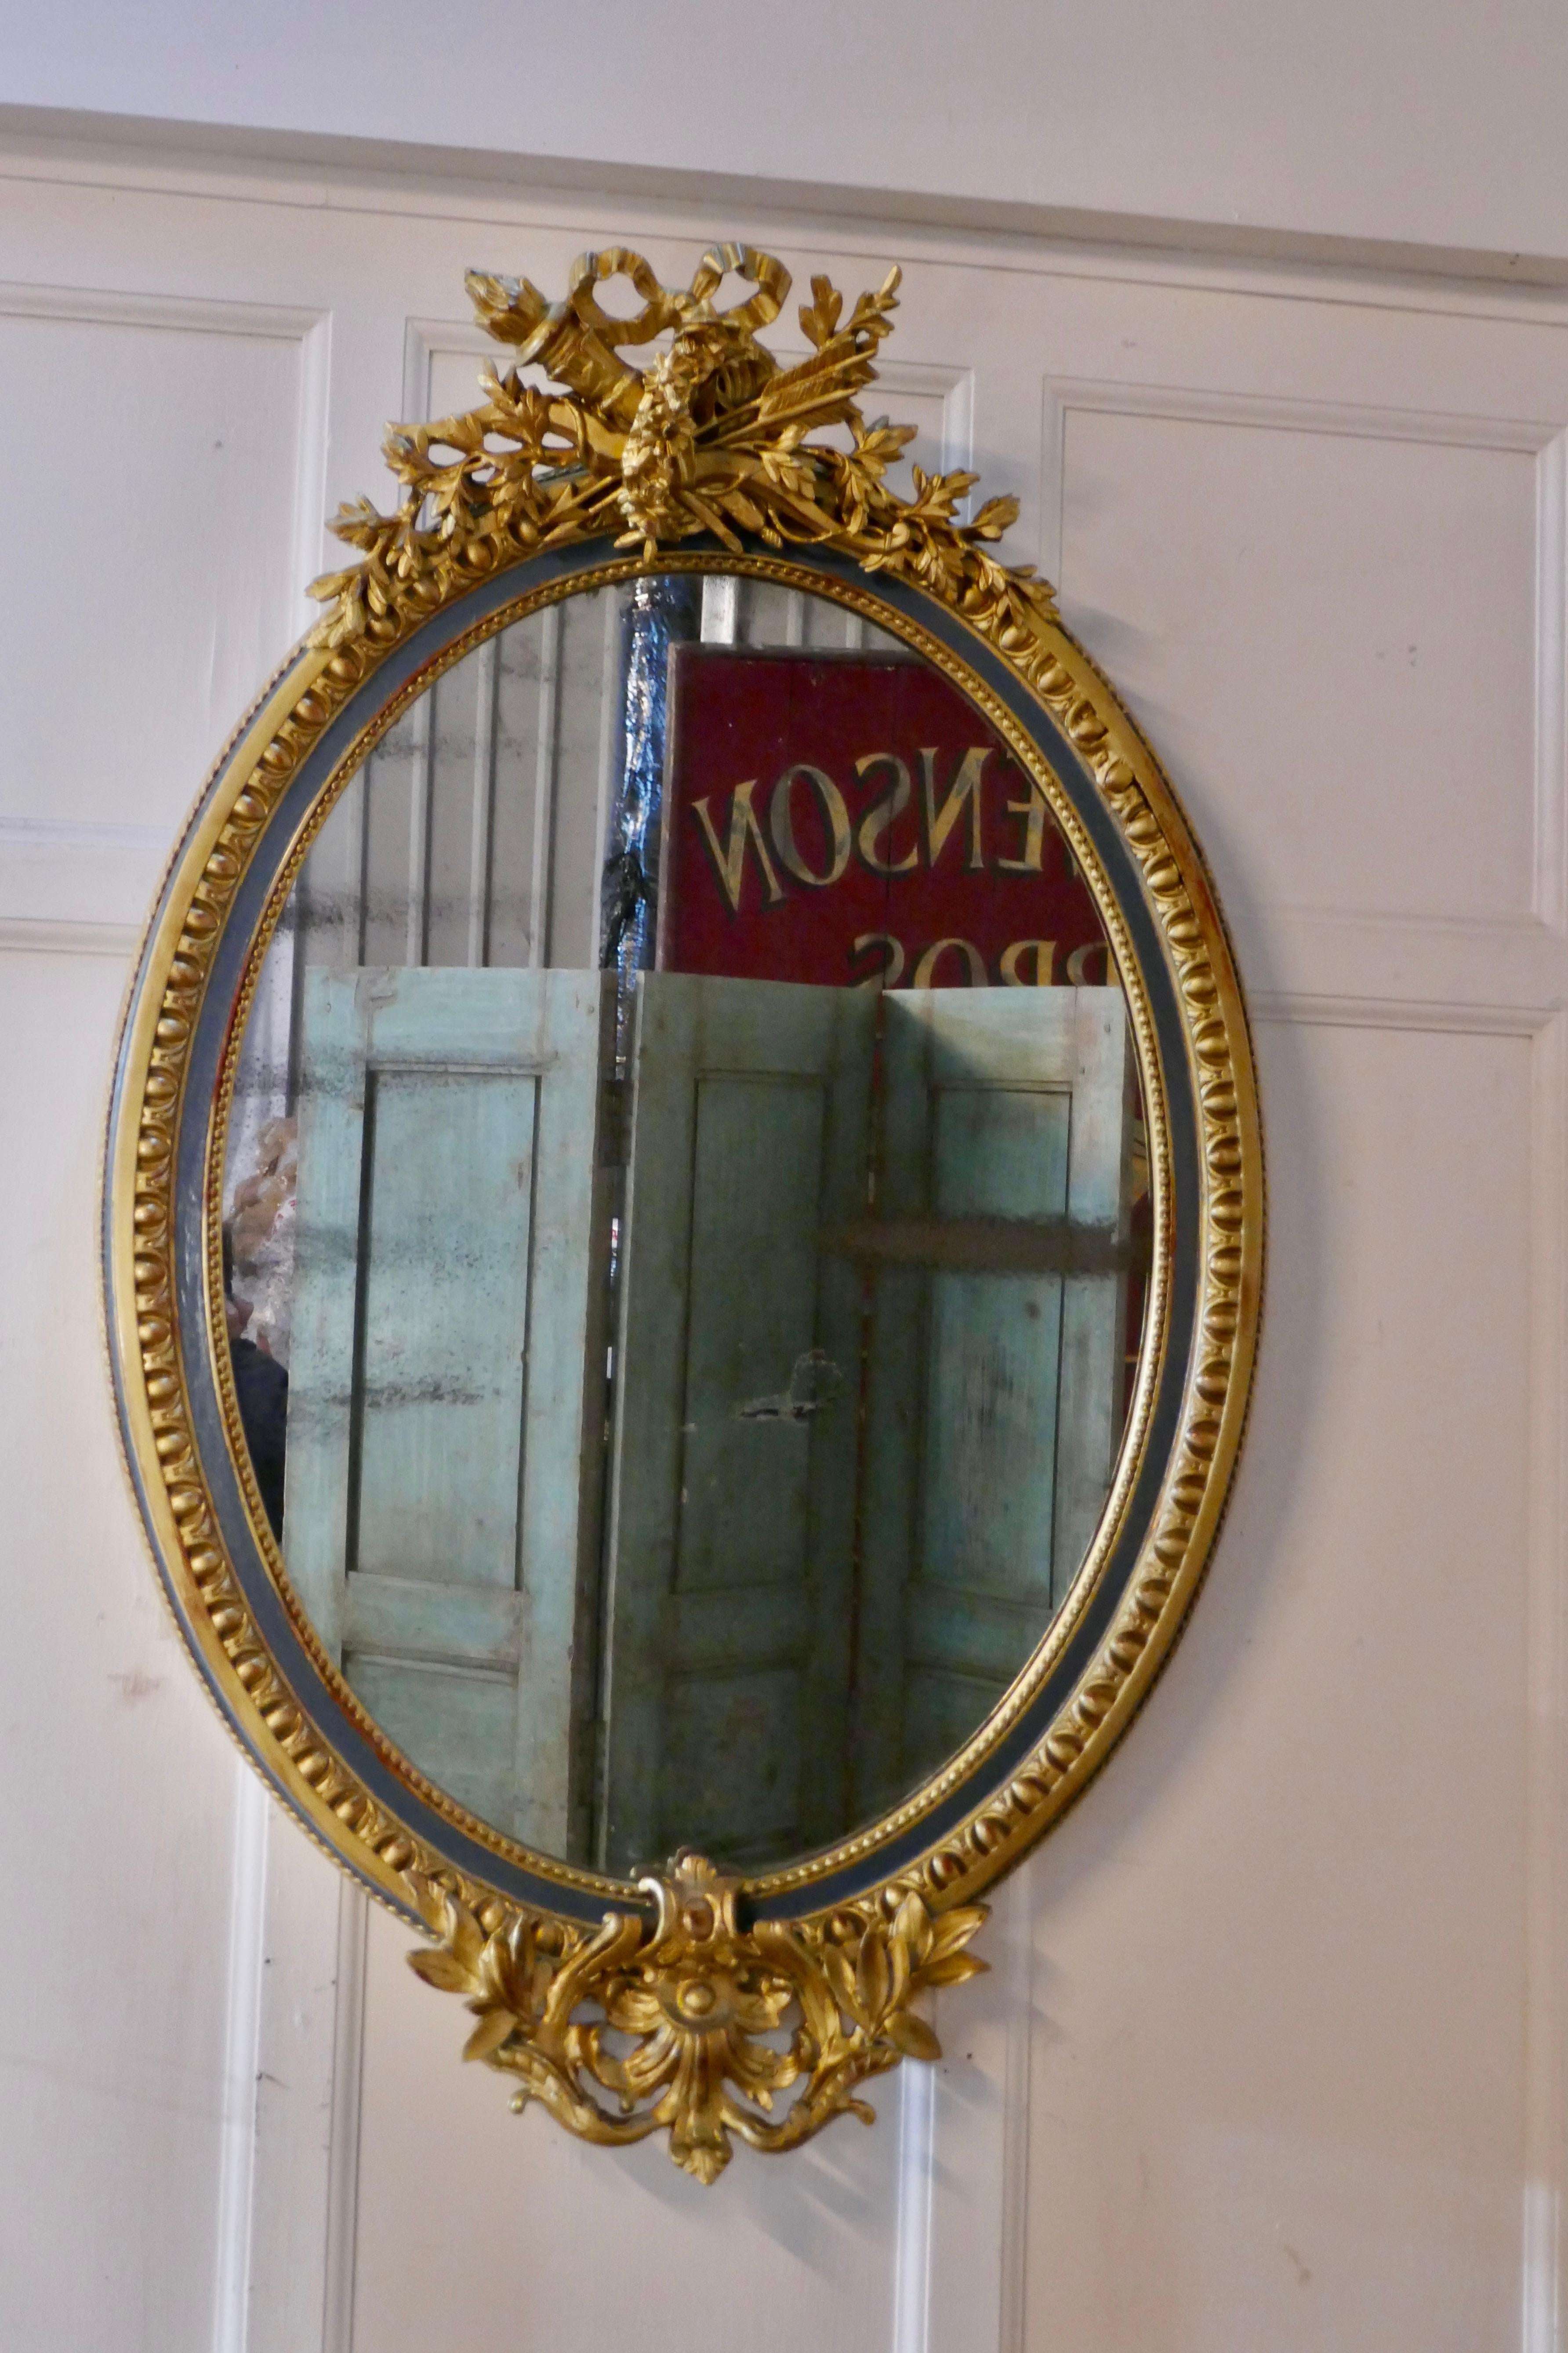 Großer ovaler vergoldeter französischer Rokoko-Wandspiegel

Der Spiegel hat einen exquisiten vergoldeten Rahmen im Rokoko-Stil, er ist mit Pfeilen und Köchern sowie vielen Blumen und Blättern mit einer attraktiven gemusterten Bordüre verziert. In